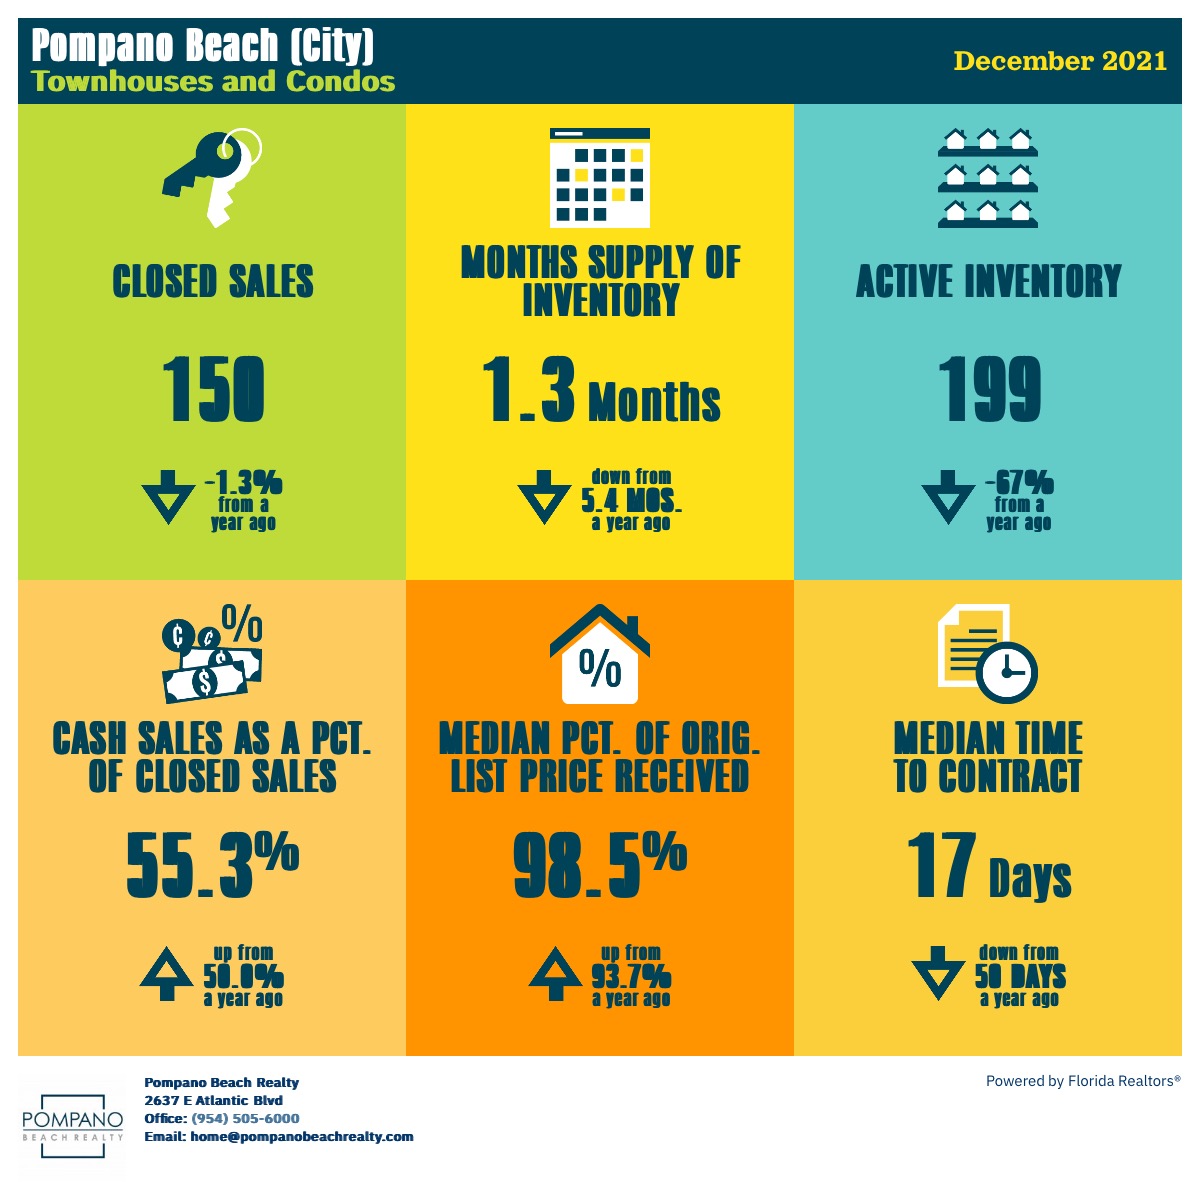 Condo Sales in Pompano Beach in Dec 2021